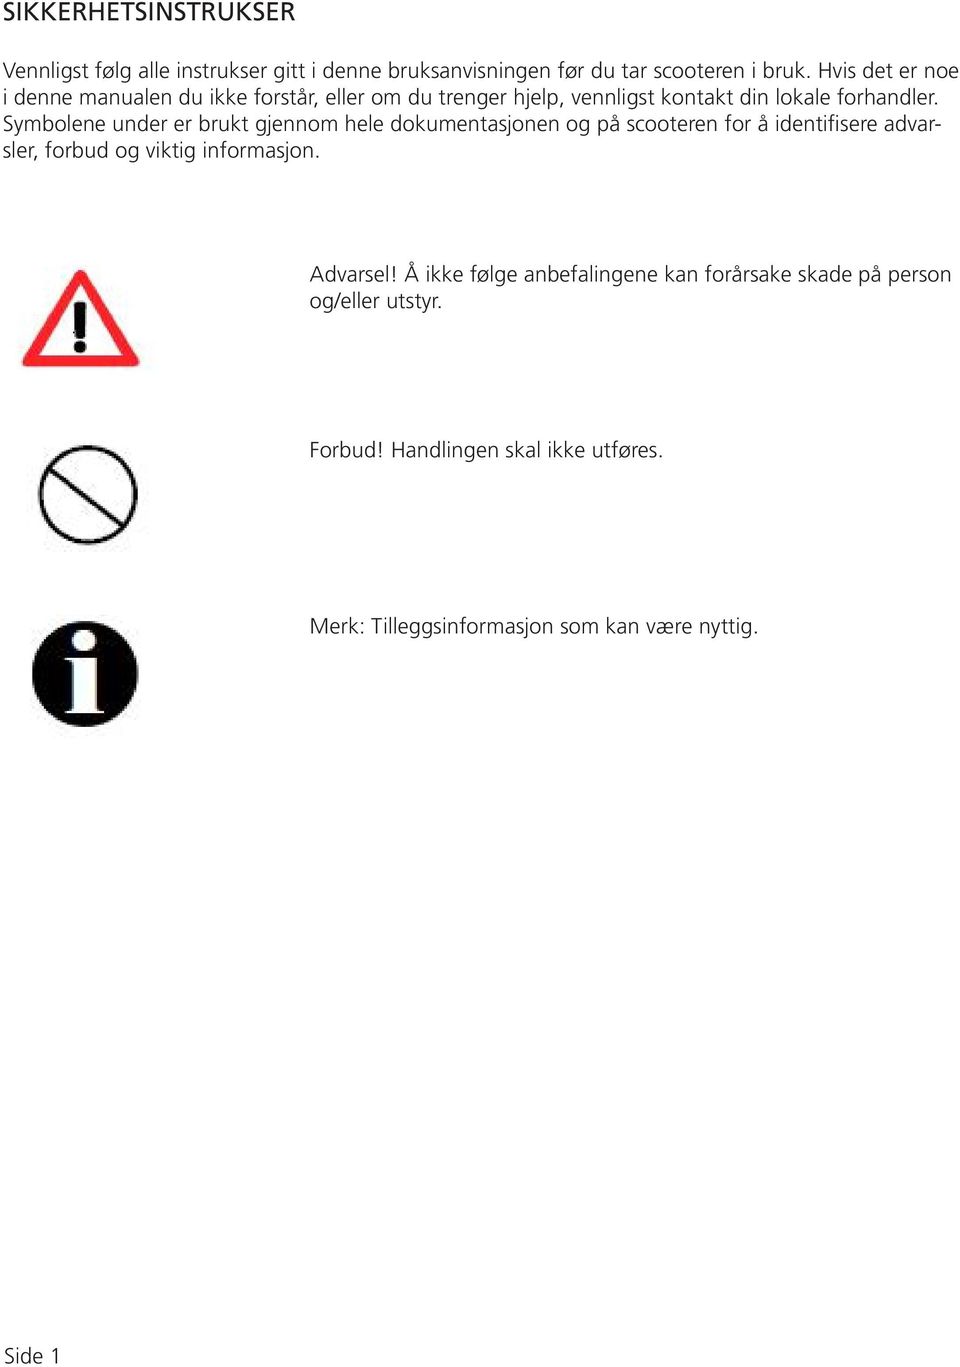 Symbolene under er brukt gjennom hele dokumentasjonen og på scooteren for å identifisere advarsler, forbud og viktig informasjon.